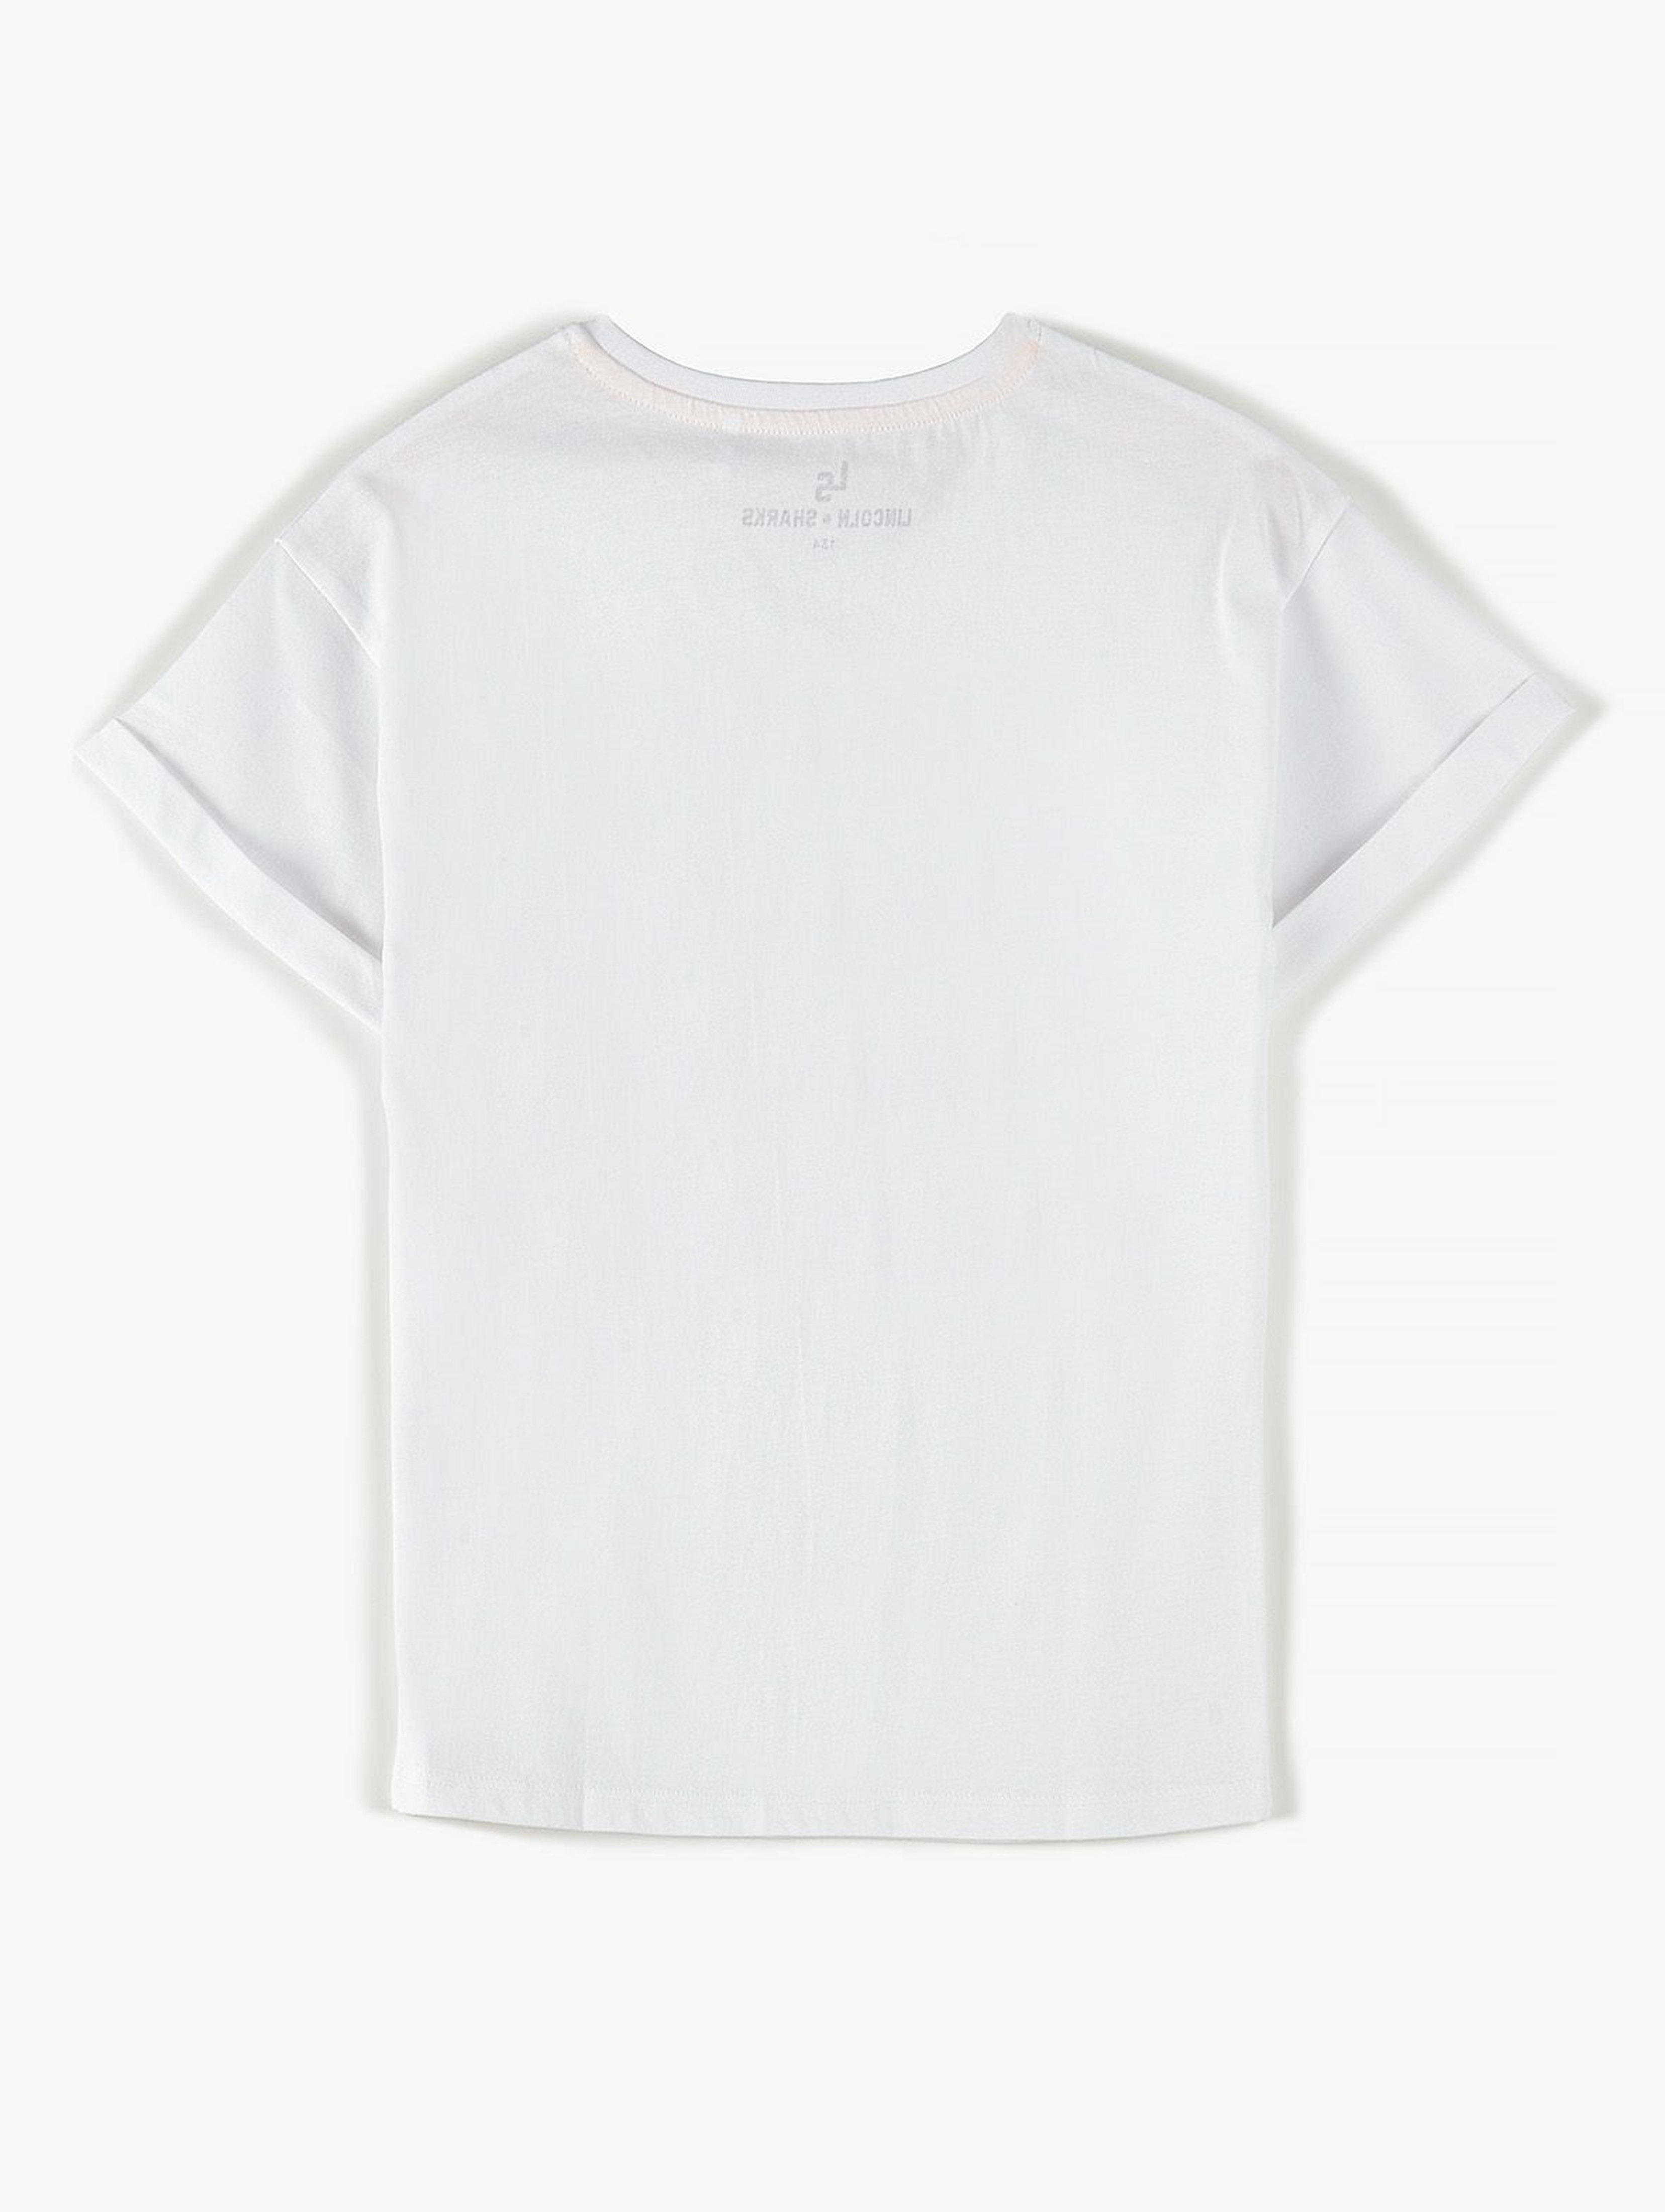 Bawełniany T- shirt dziewczęcy biały z nadrukiem z przodu- 100% bawełna